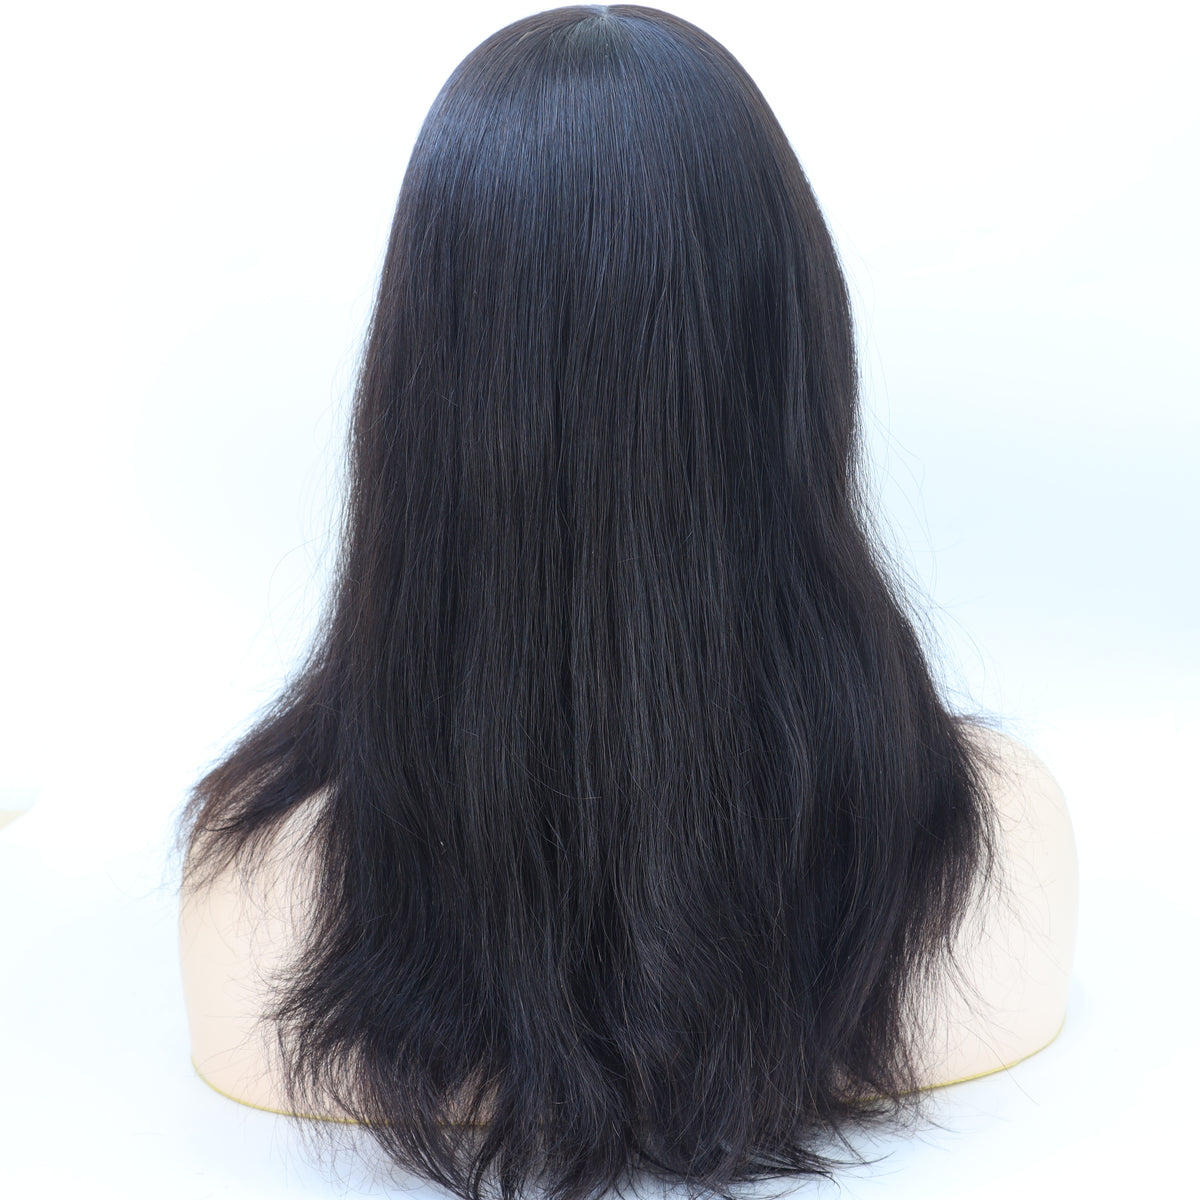 توبر شعر ناعم أحادي مشبك للنساء مقاس 6 × 7 بوصات